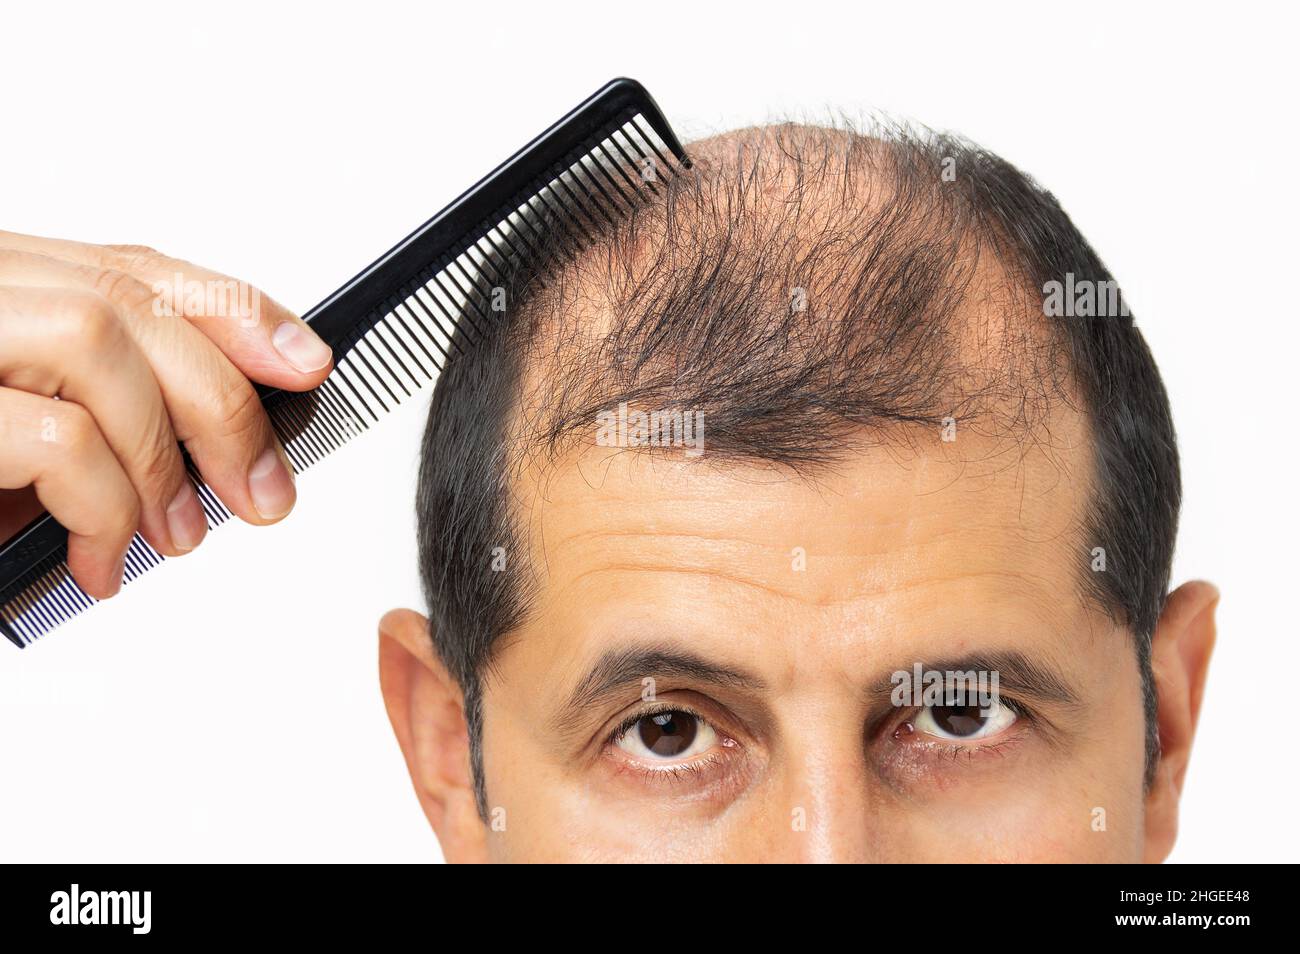 Alopecia umana o perdita di capelli - uomo adulto che tiene il pettine sulla testa del calvo Foto Stock